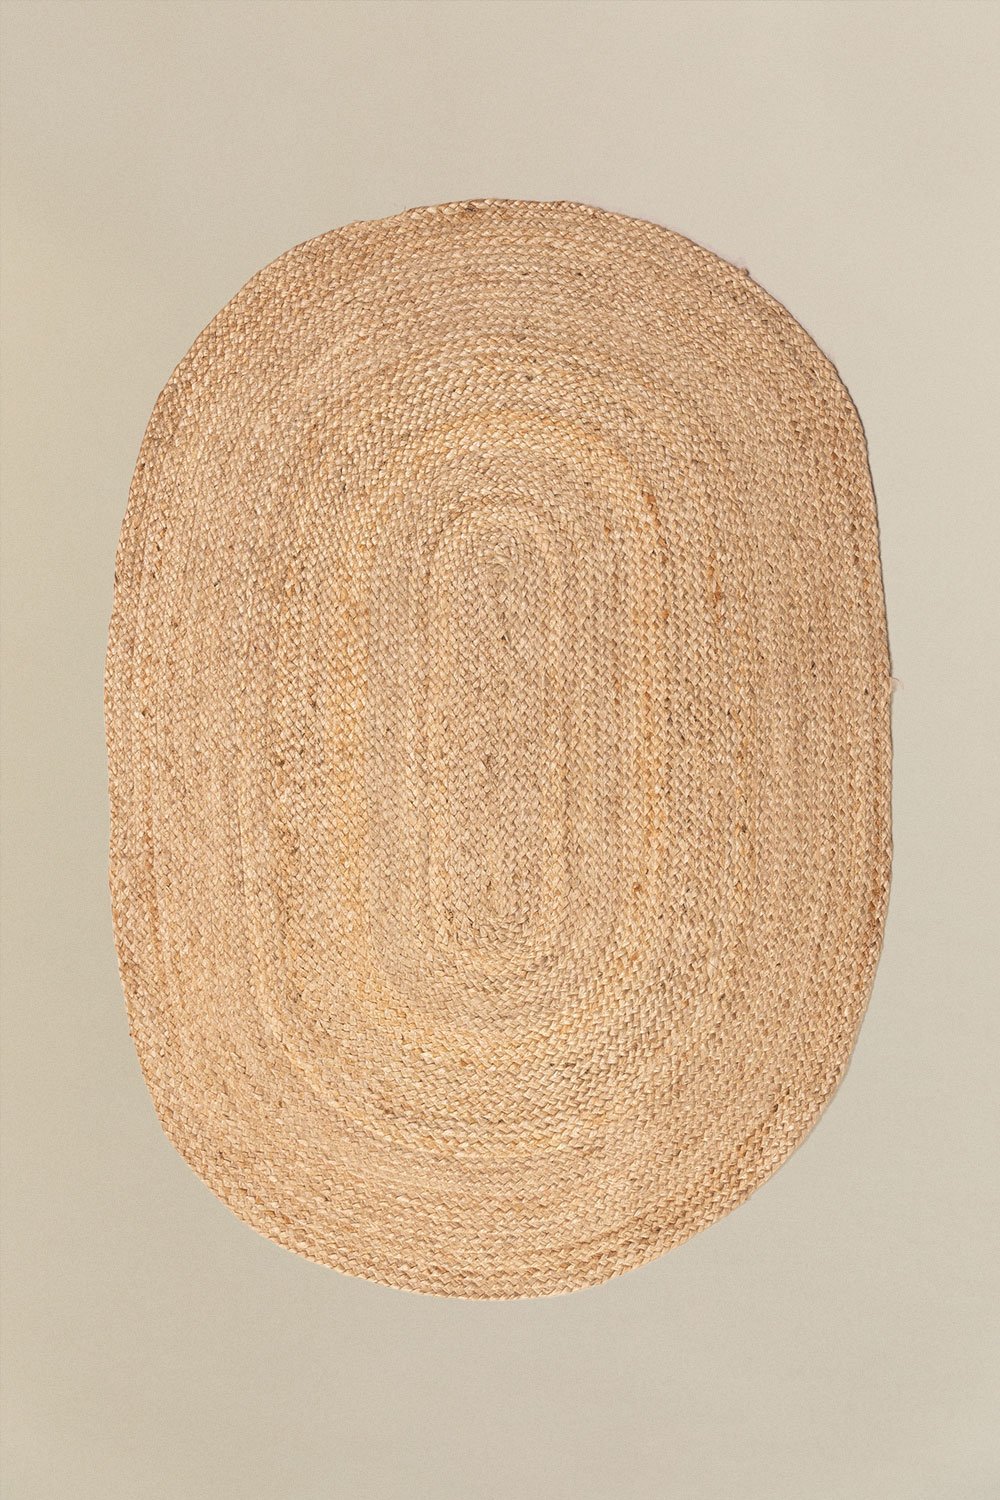 Tappeto ovale in juta naturale (141x99,5 cm) Tempo, immagine della galleria 1